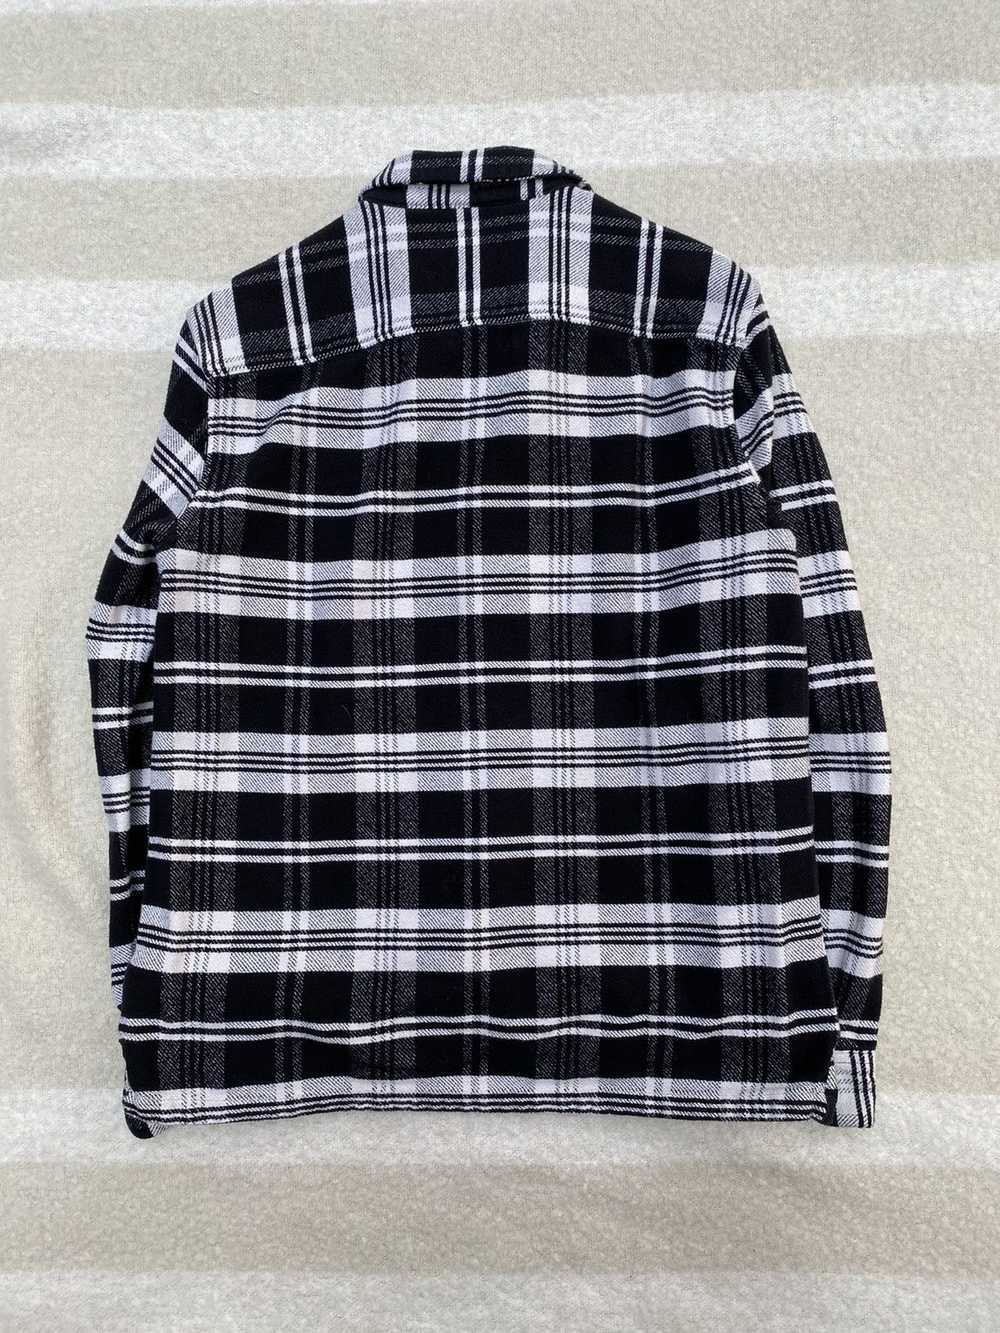 Allsaints AllSaints Cervino Flannel Shirt Jacket - image 4